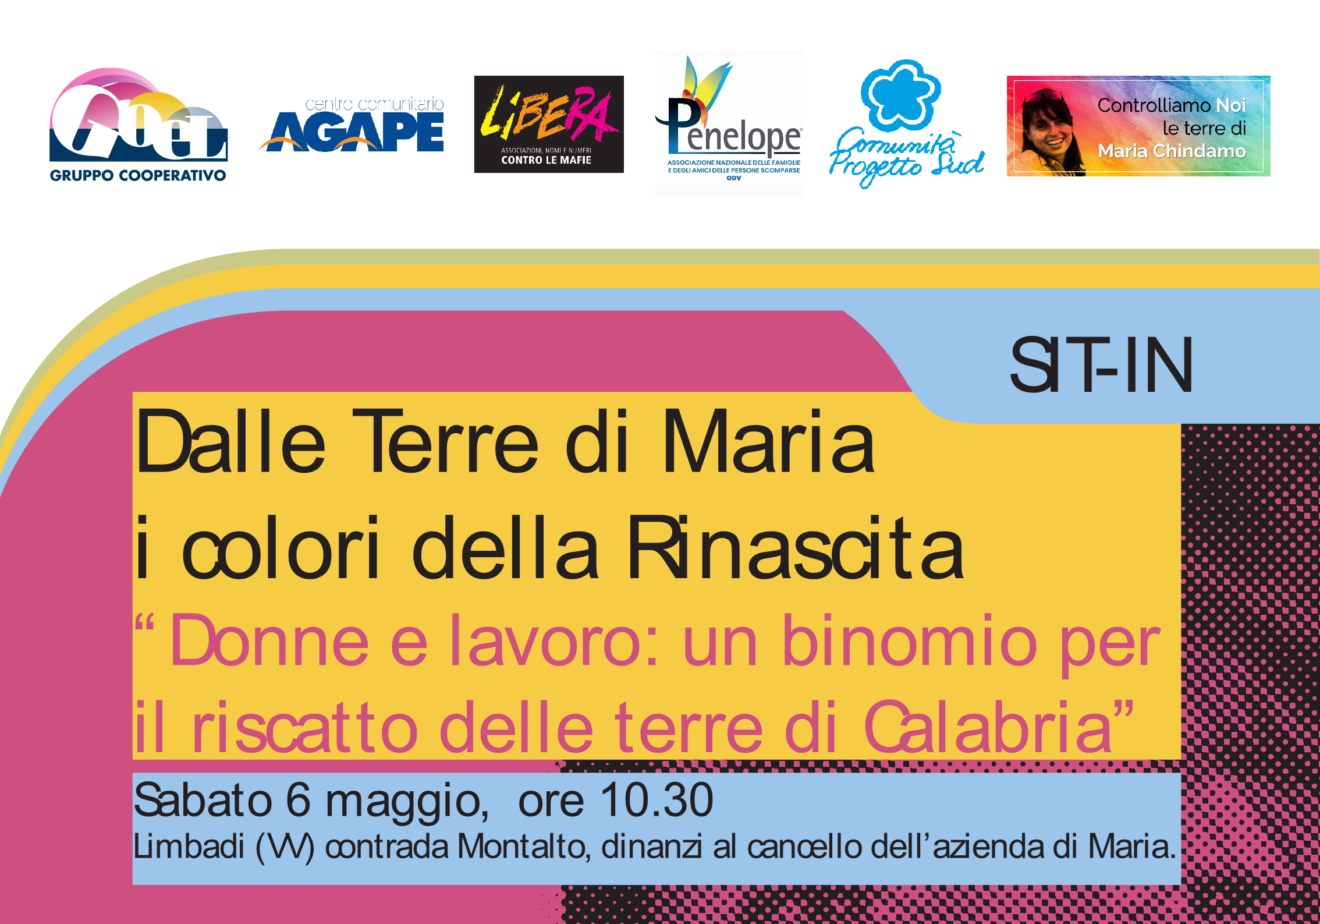 Sit-in ＂Dalle Terre di Maria i colori della Rinascita - Donne e lavoro: un binomio per il riscatto delle terre di Calabria”